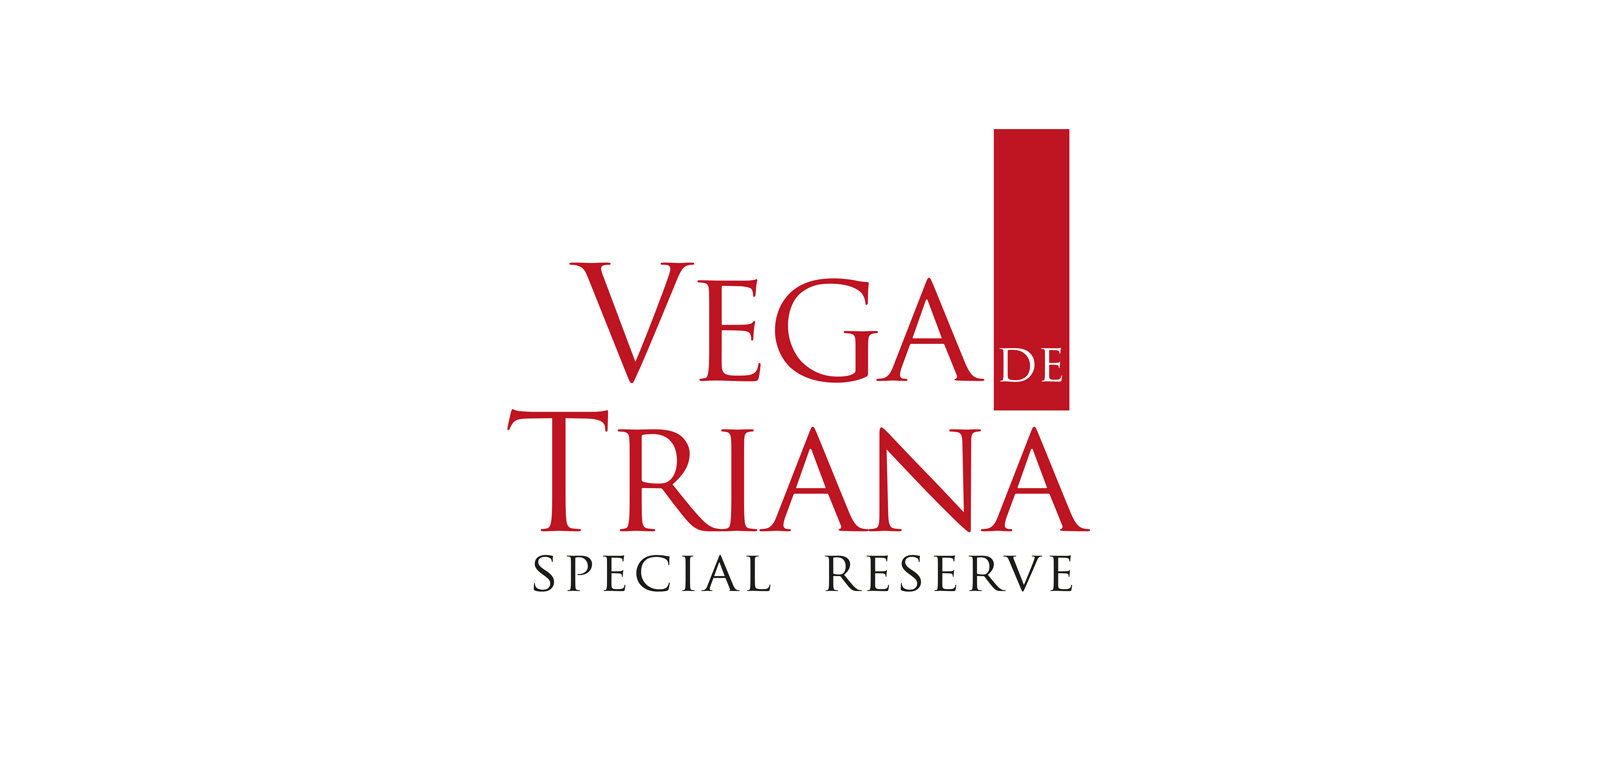 Diseño de marca y logo creativo paraaceite de oliva virgen extra Vega de Triana